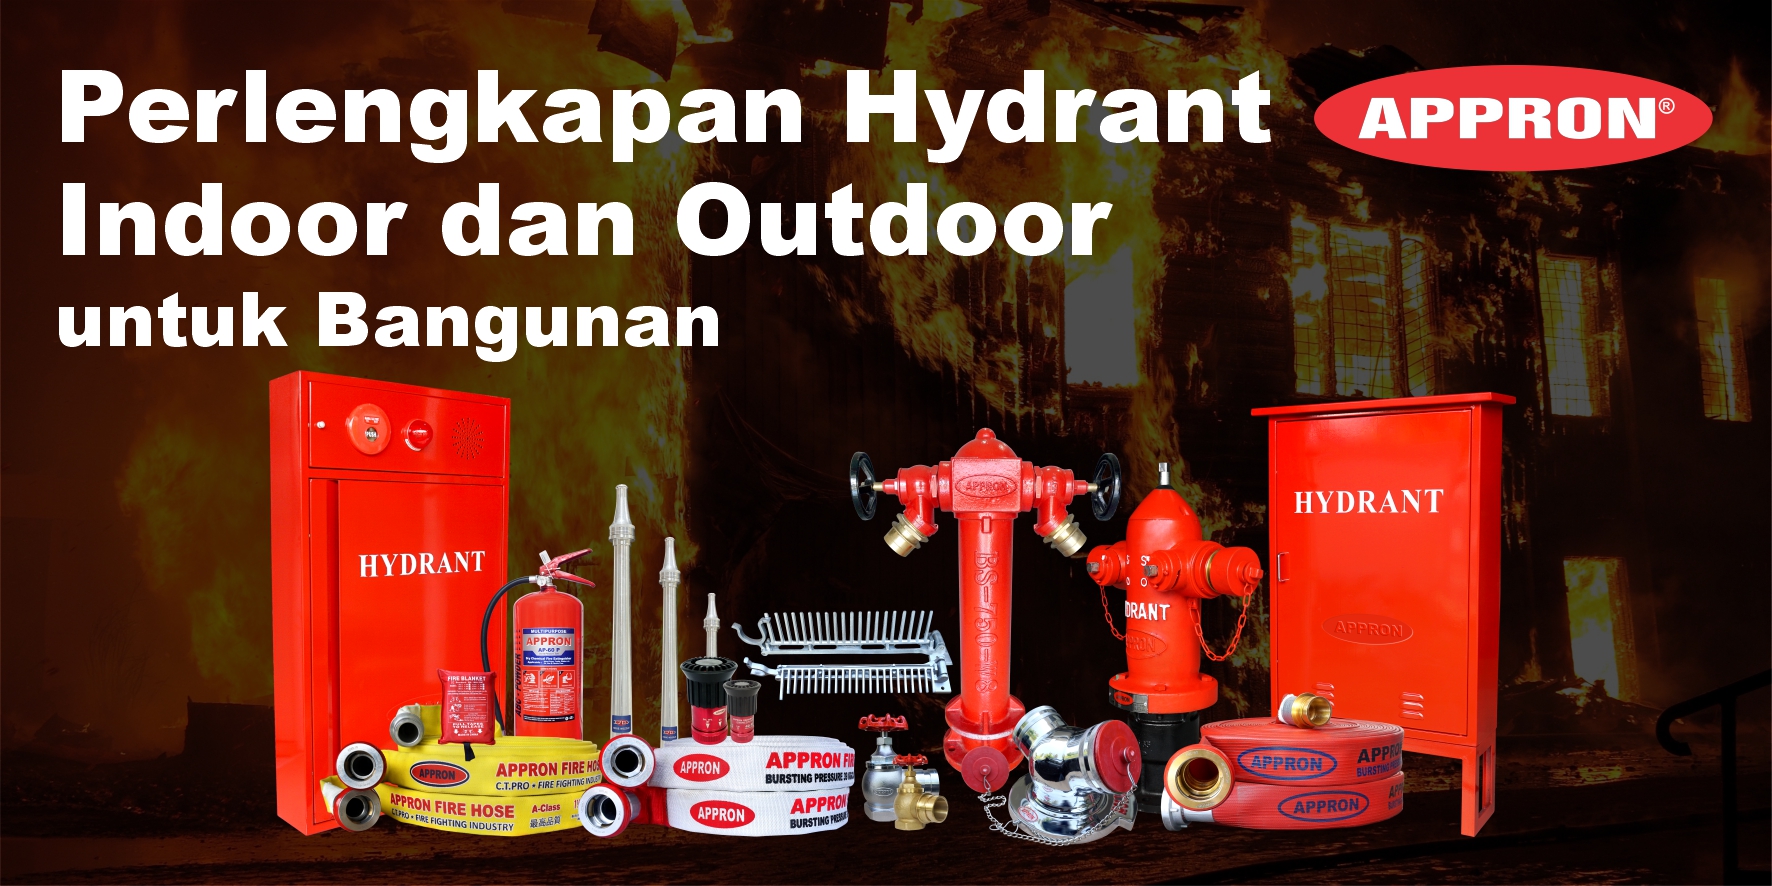 Perlengkapan Hydrant Indoor dan Outdoor untuk Bangunan